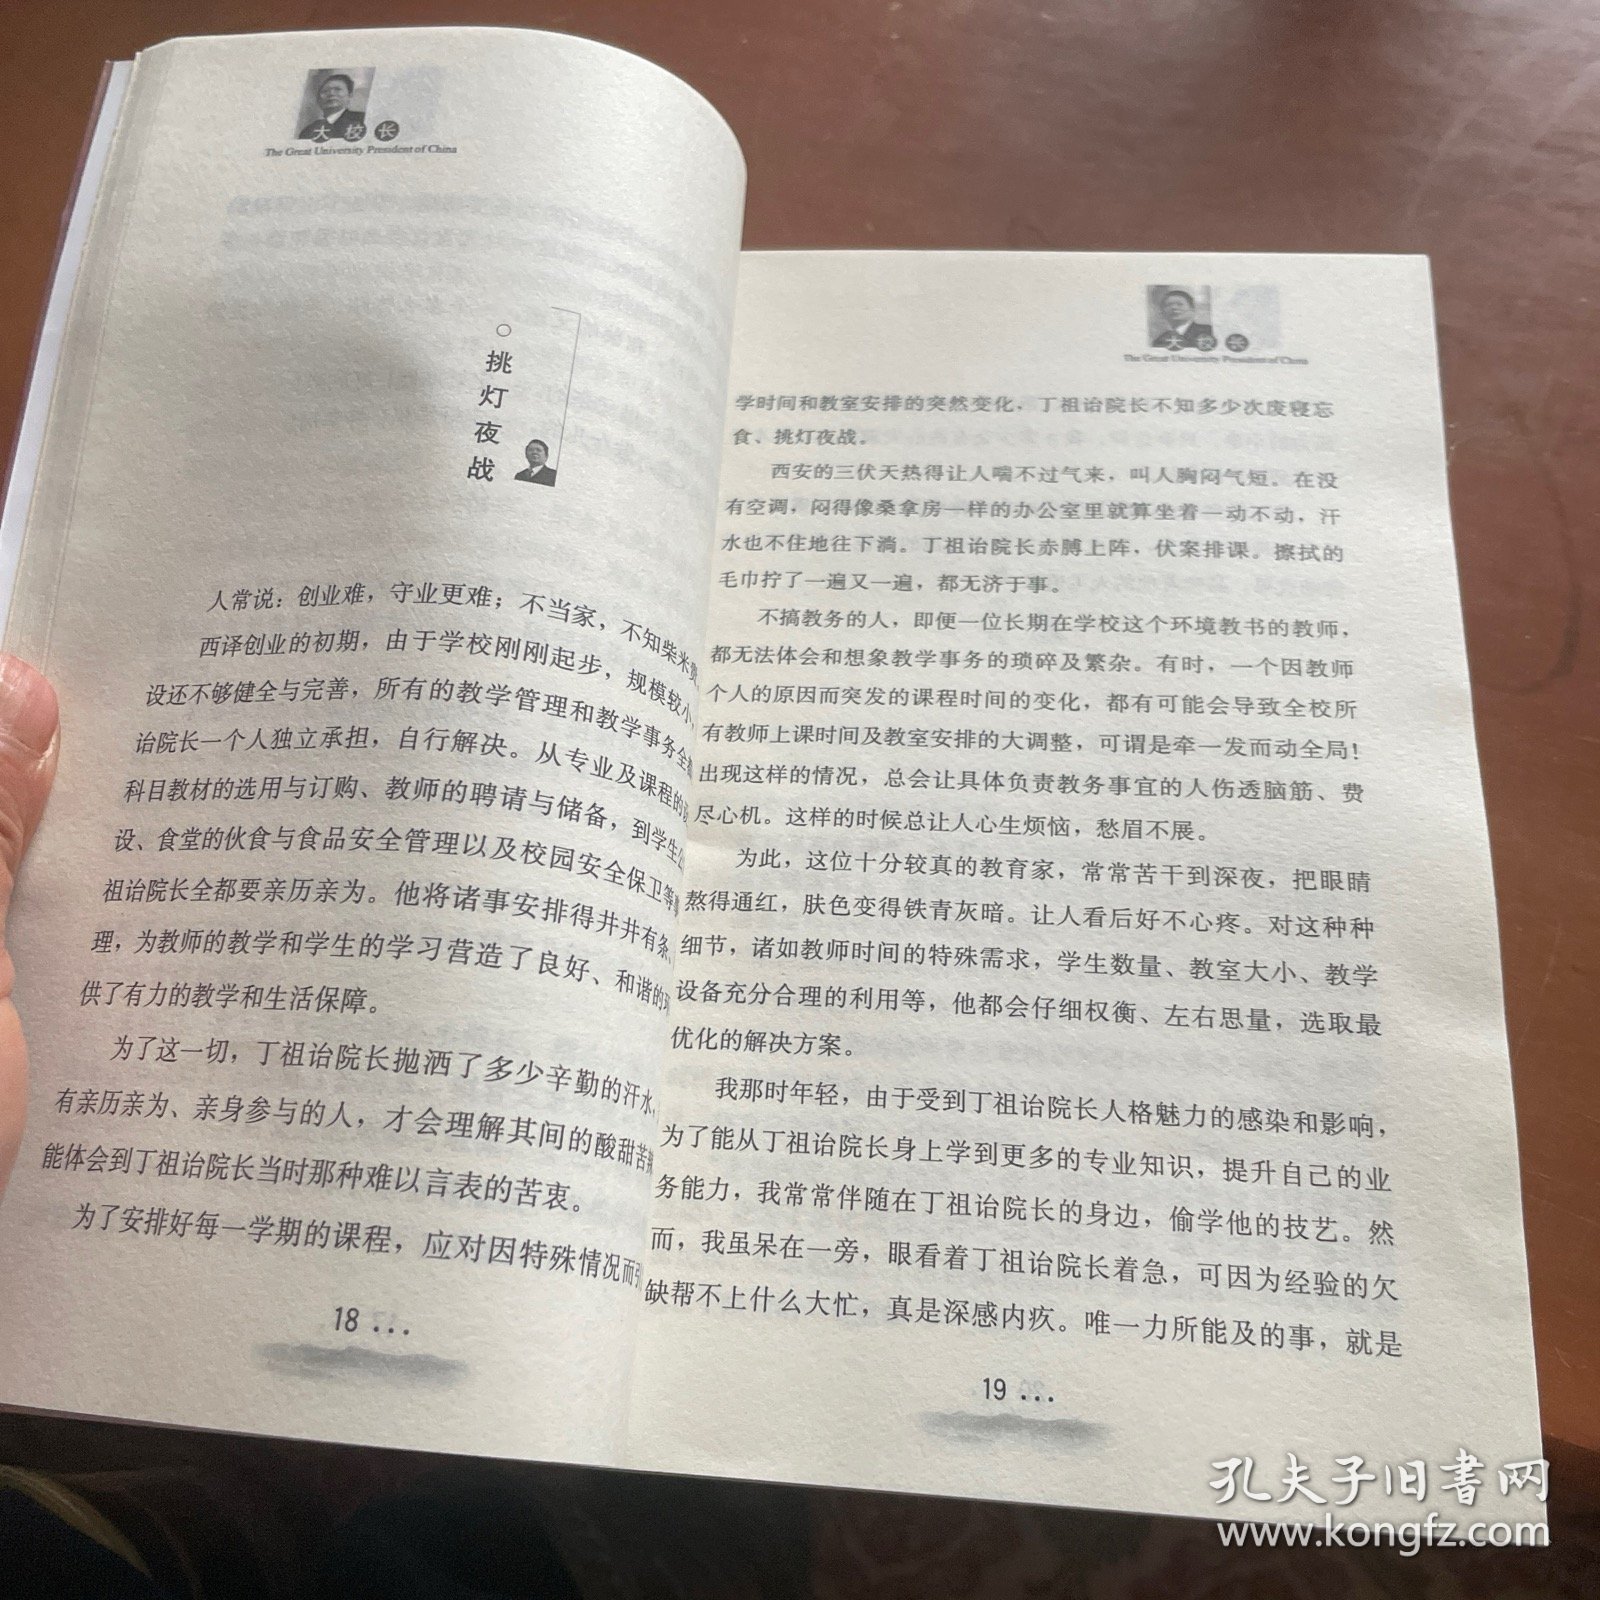 大校长 : 解密丁祖诒校长 解码西译院现象 : decoding president Ding Zuyi and Xi'an Fanyi University